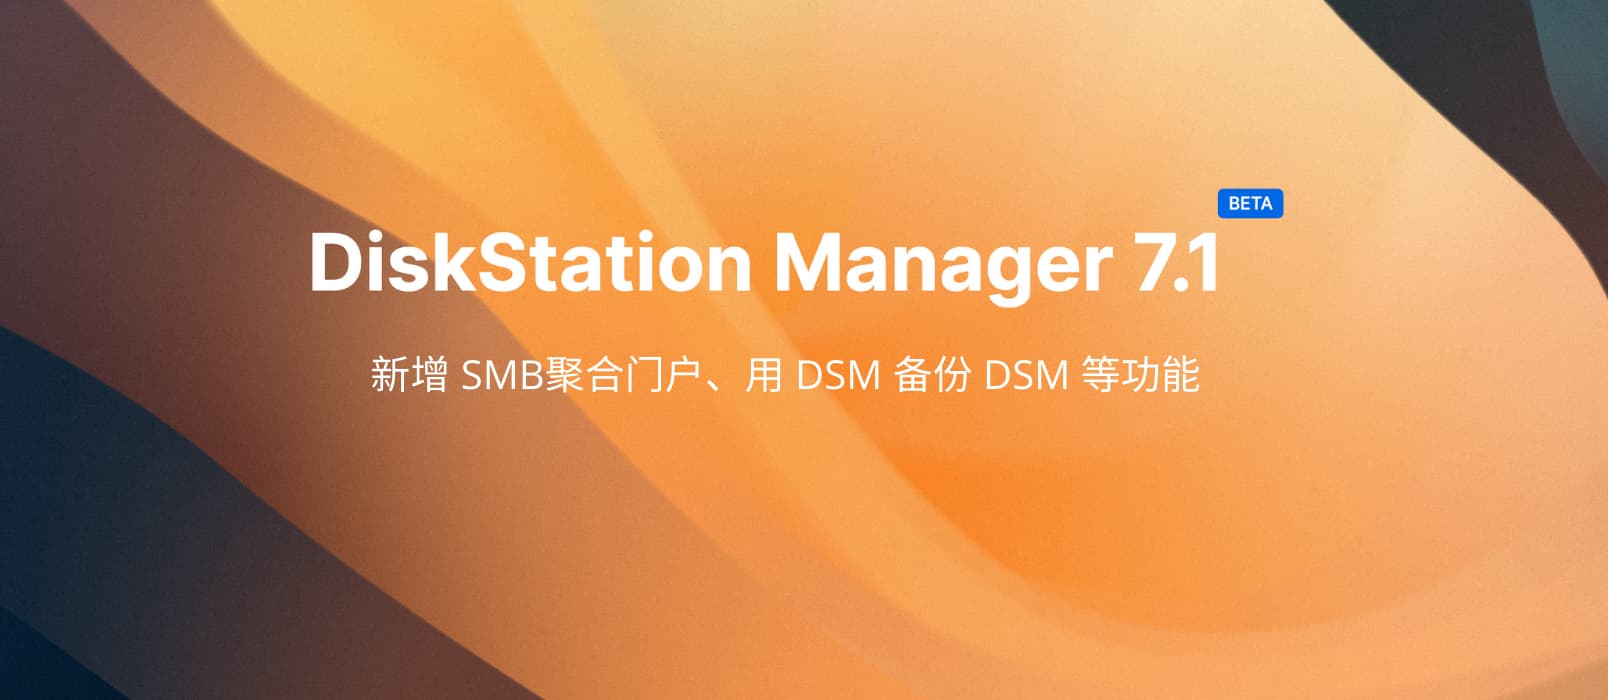 群晖 DSM 7.1 公测，新增 SMB聚合门户、用 DSM 备份 DSM 等功能